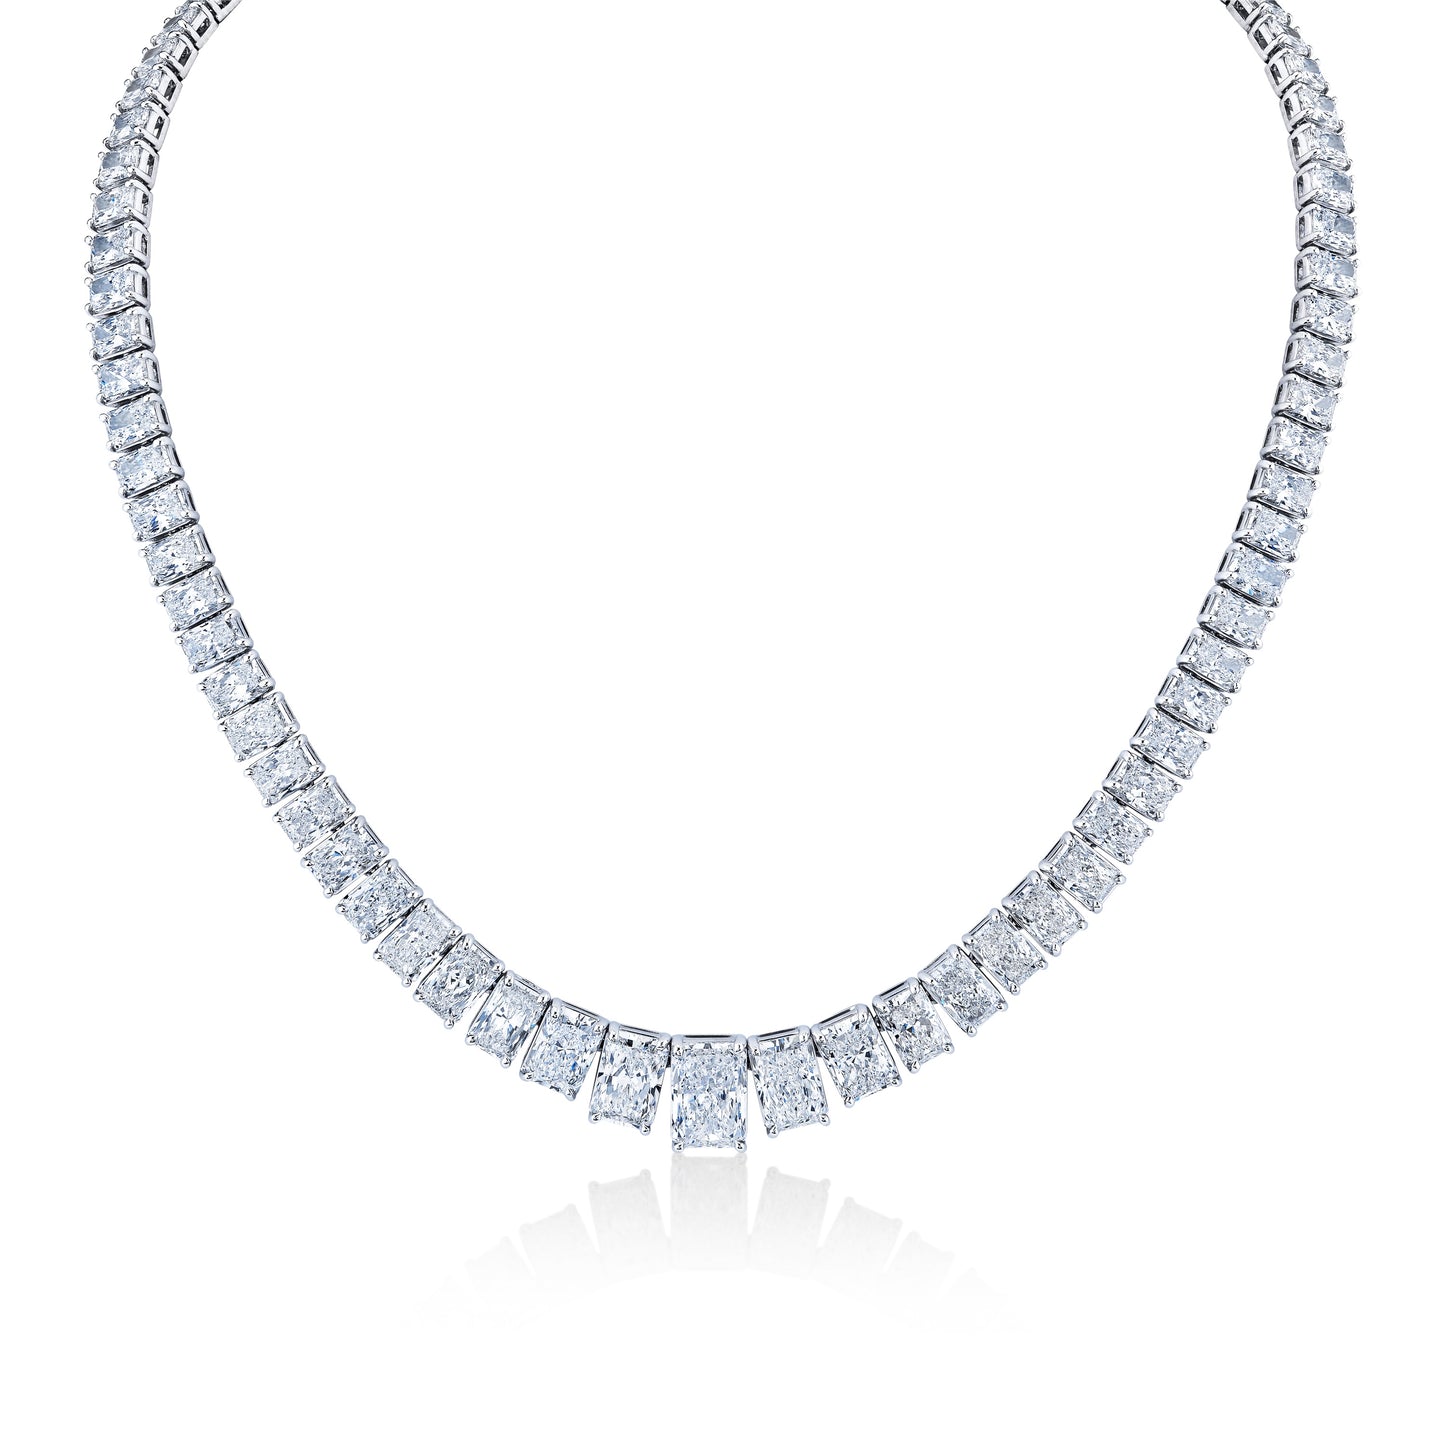 48.59 Carat Graduated Riviera Radiant Cut Diamond Necklace